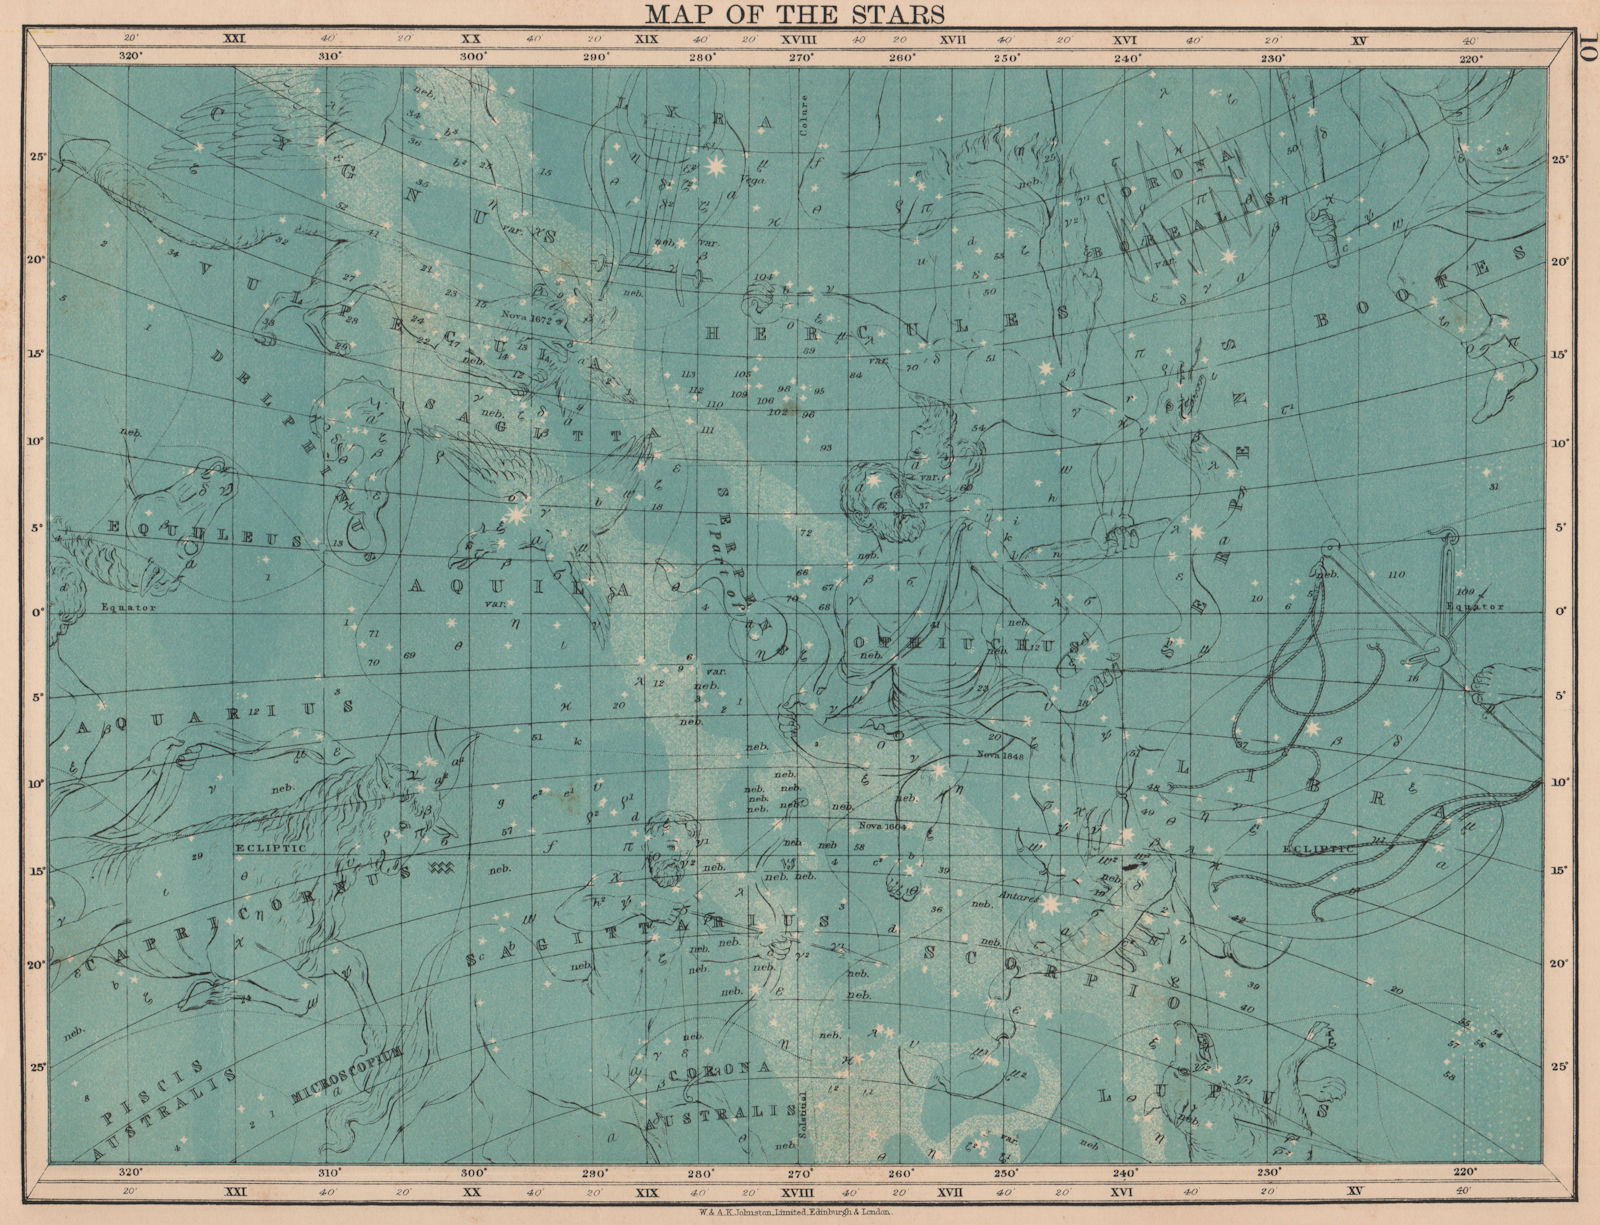 Associate Product ASTRONOMY. Star map. Sagittarius Hercules Aquila Scorpio Hercules. JOHNSTON 1906